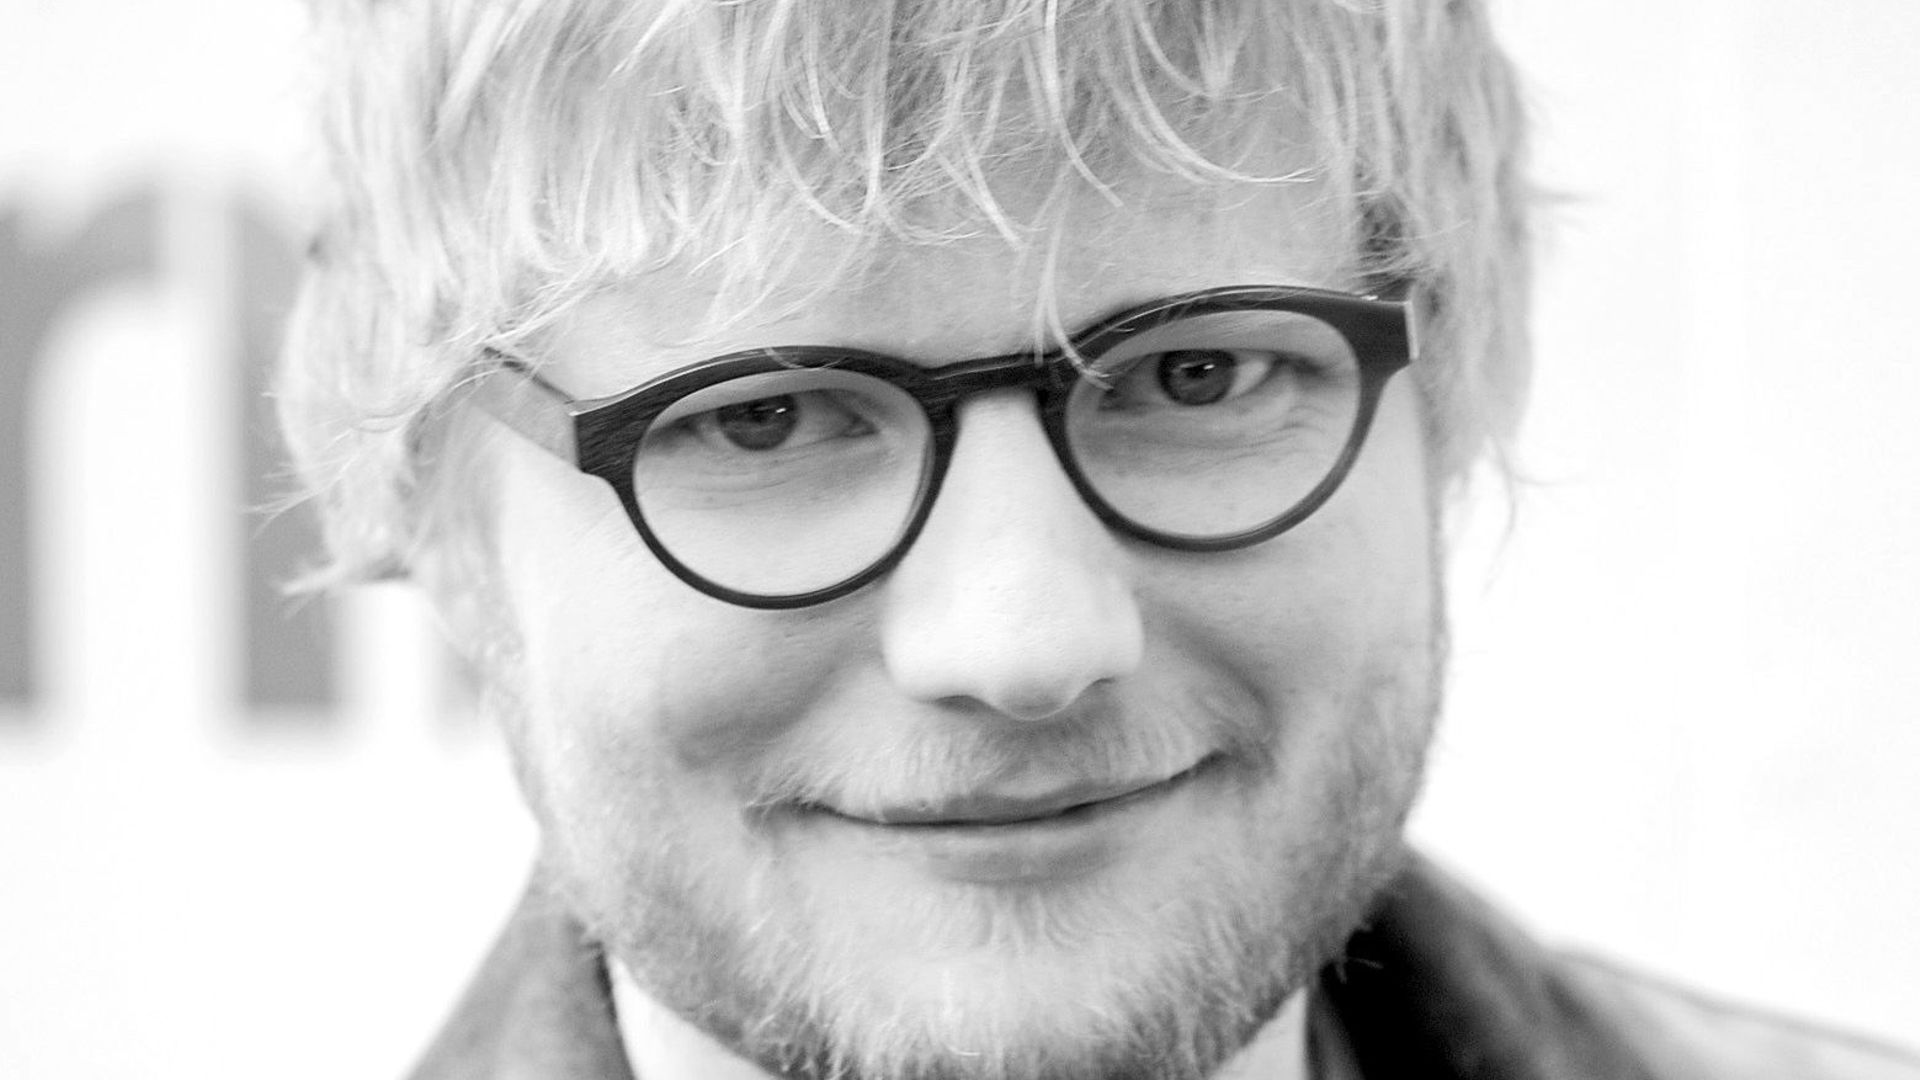 Ed Sheeran annonce la date de la sortie de son nouvel album synonyme de changement et maturité